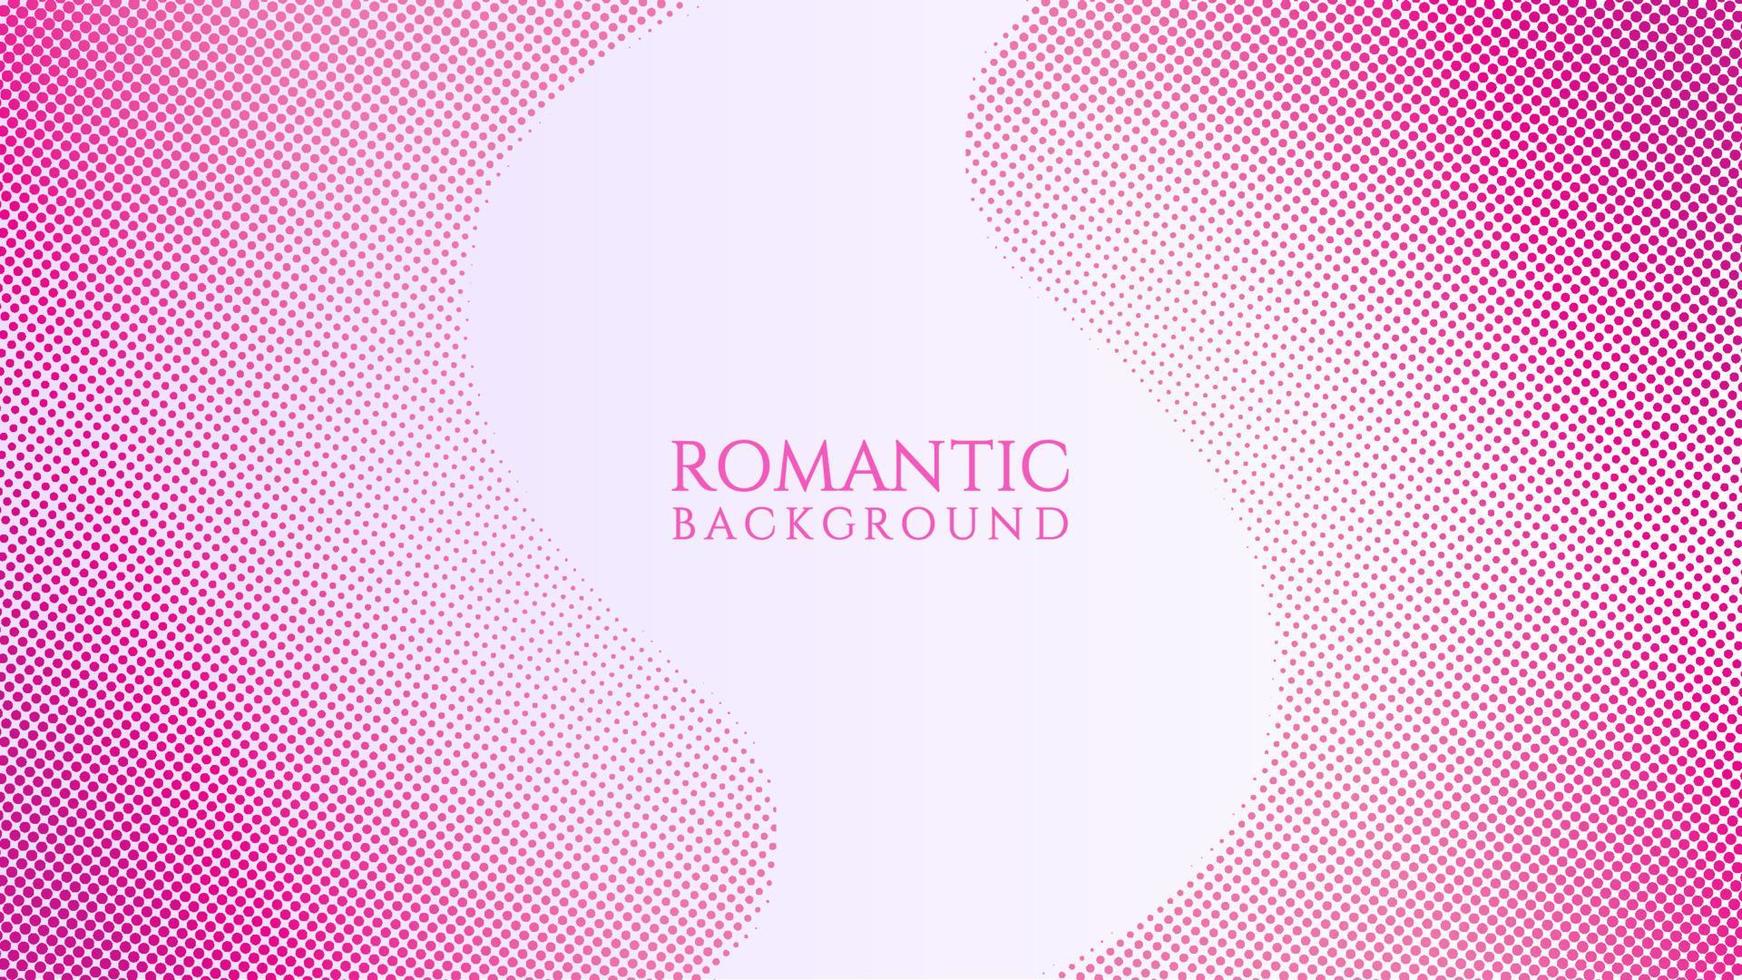 halftone achtergrond ontwerpsjabloon, popart, abstracte stippen patroon illustratie, vintage textuur element, roze violet verloop, romantische kleur, valentijn dag vector